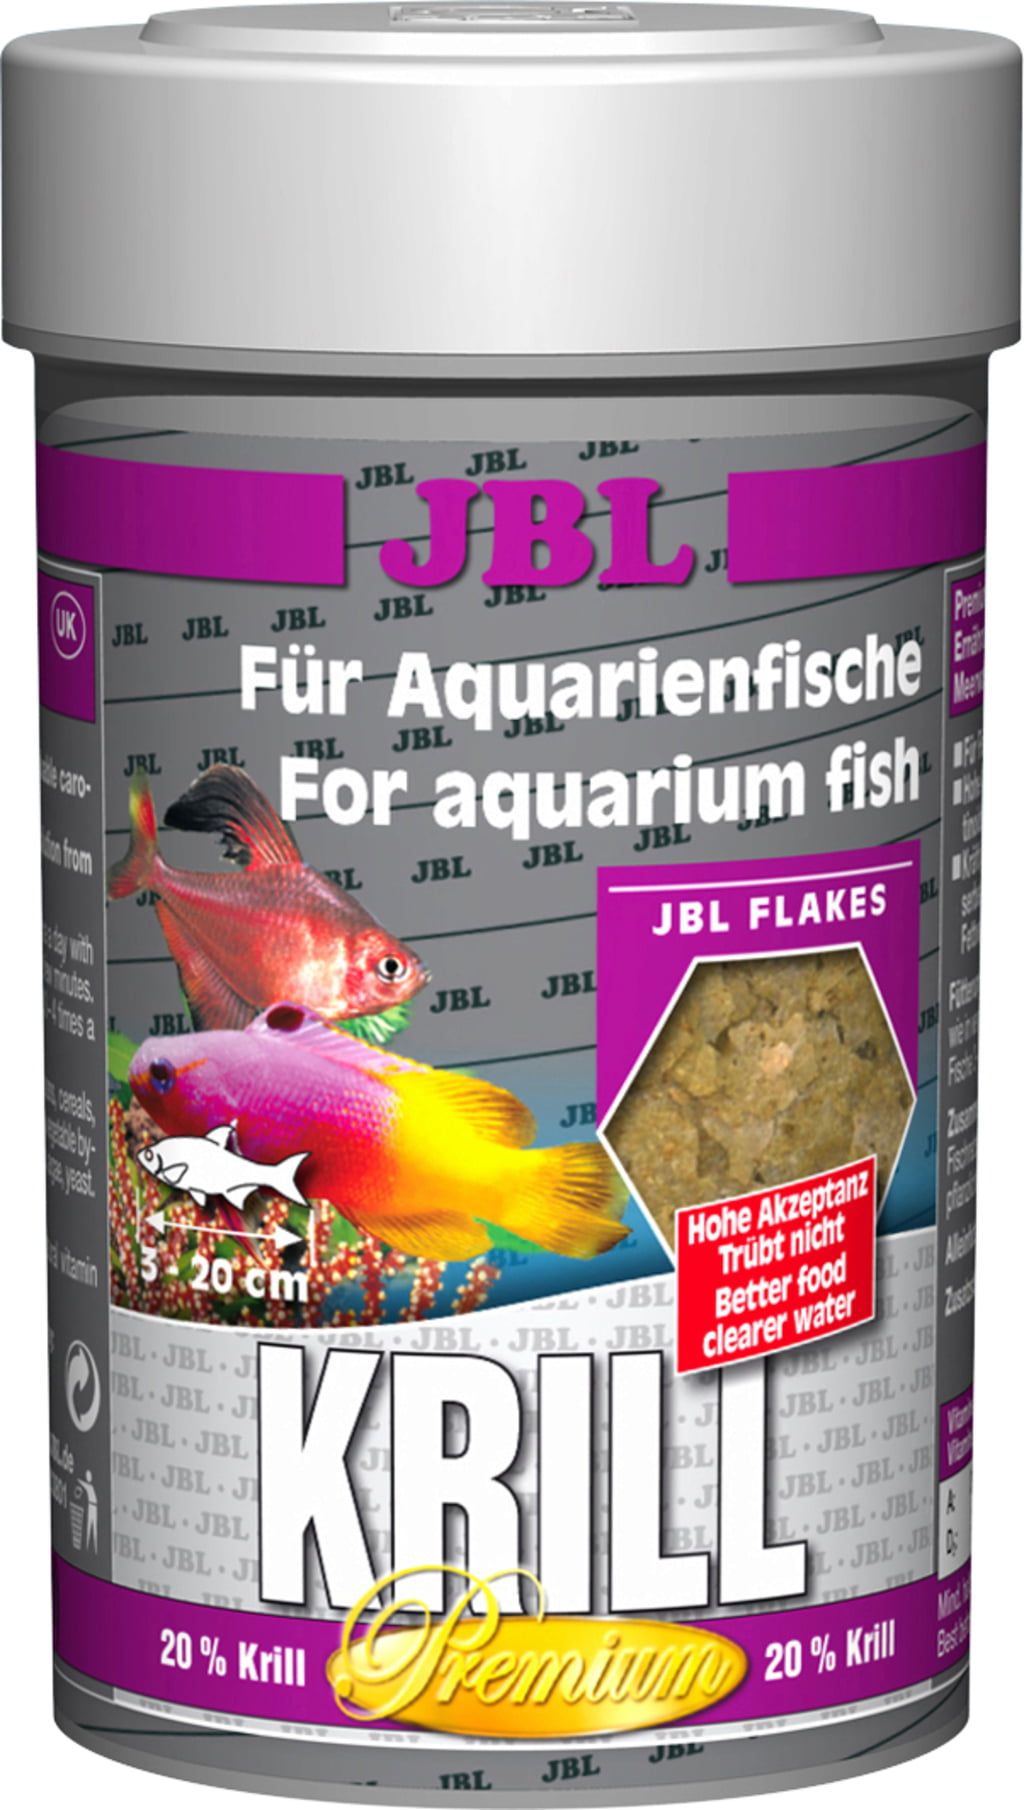 Krill Flat Pack - Feeder Fish Food